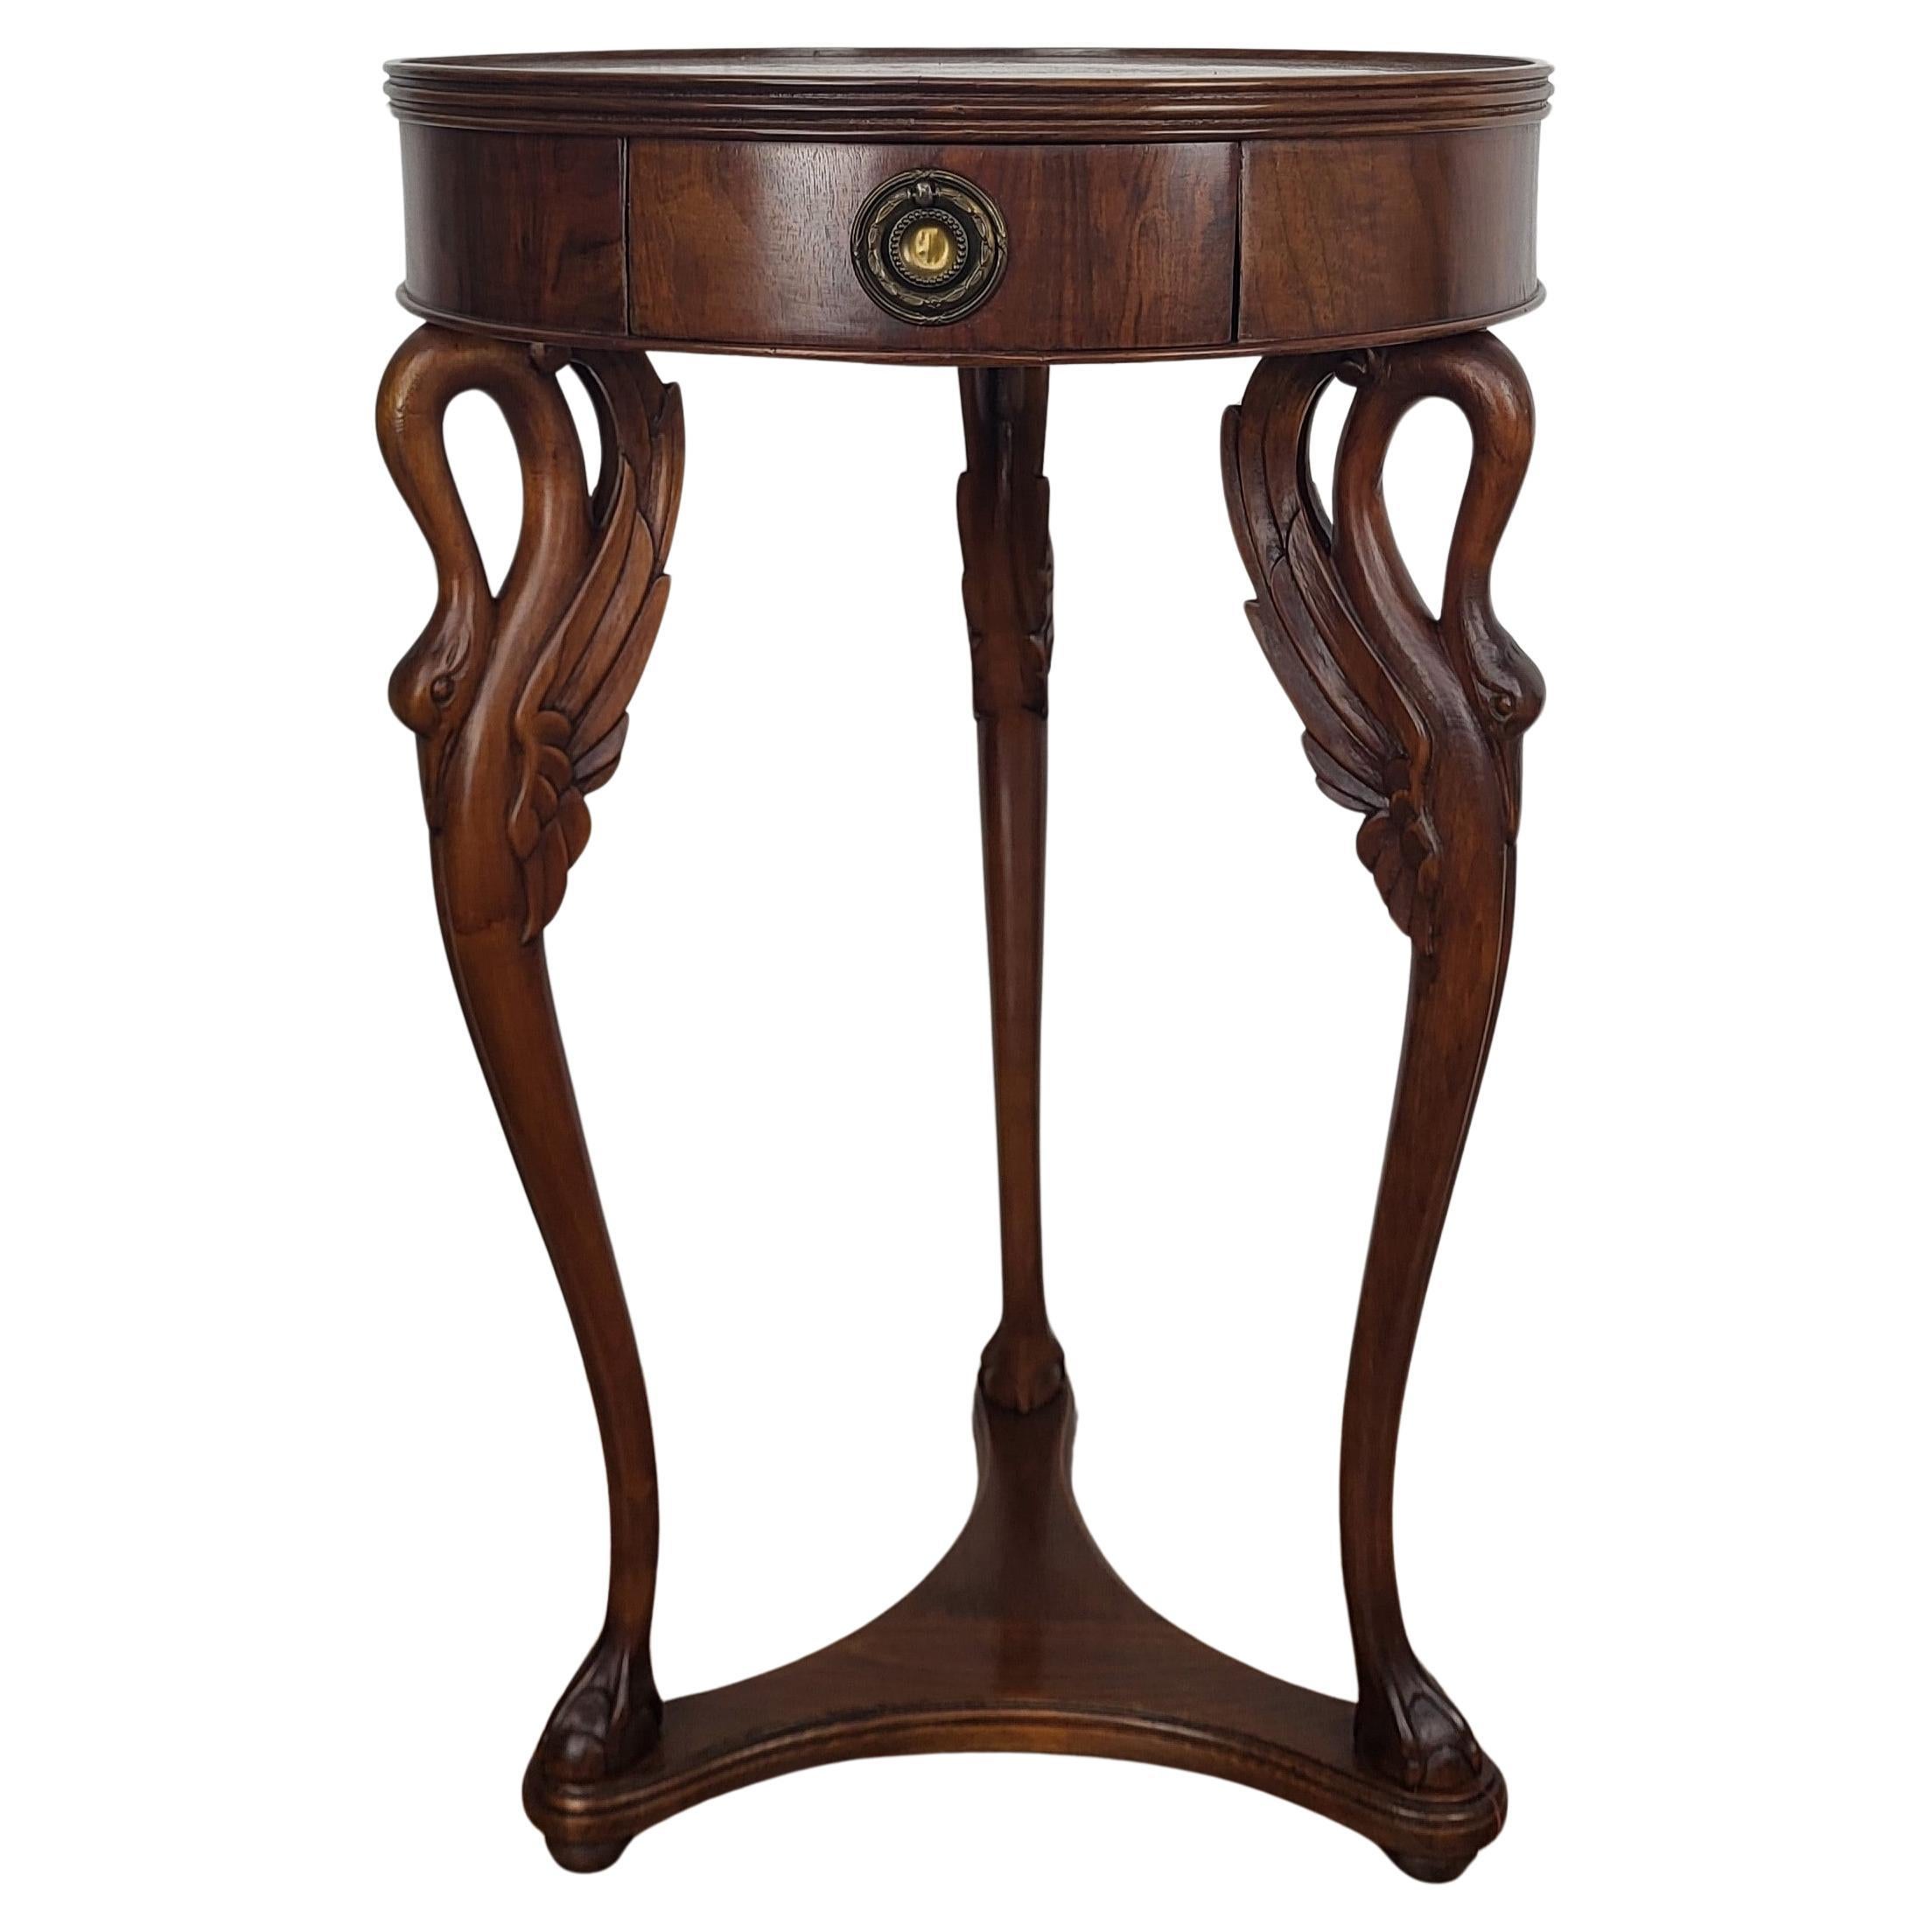 1960s Italian Regency Neoclassical Wooden Round Tripod Swan Gueridon Side Table For Sale